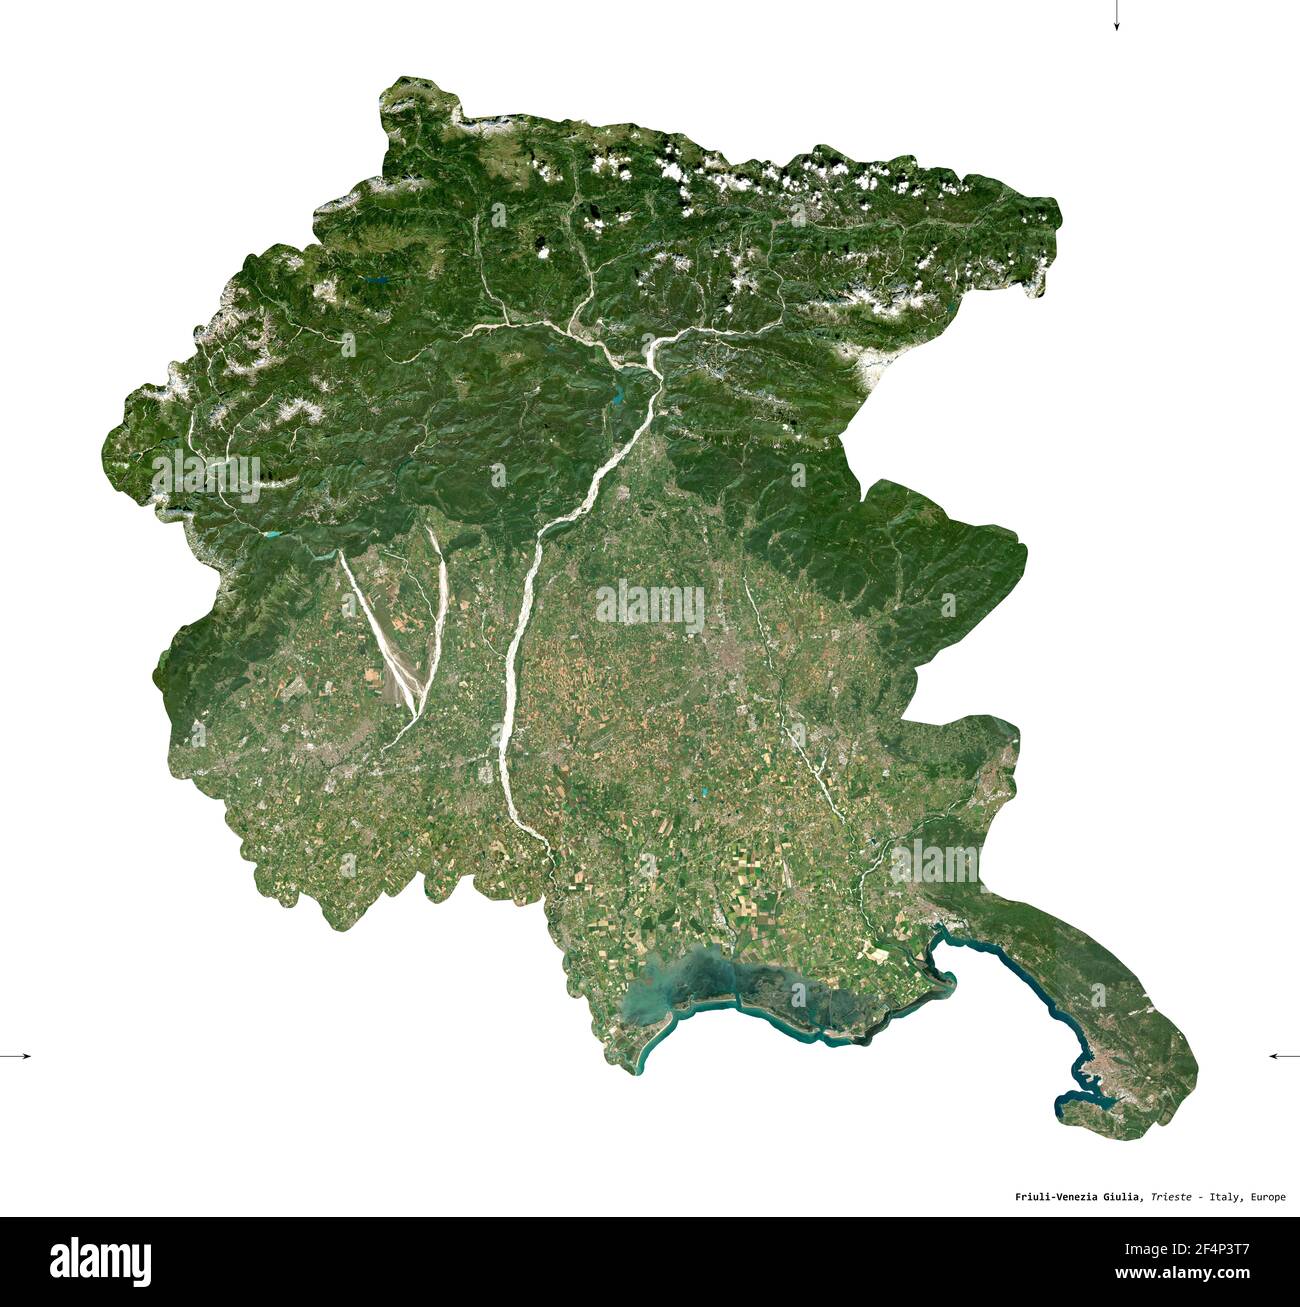 Friuli-Venecia Julia, región autónoma de Italia. Imágenes de satélite Sentinel-2. Forma aislada sobre blanco. Descripción, ubicación de la capital. Contai Foto de stock